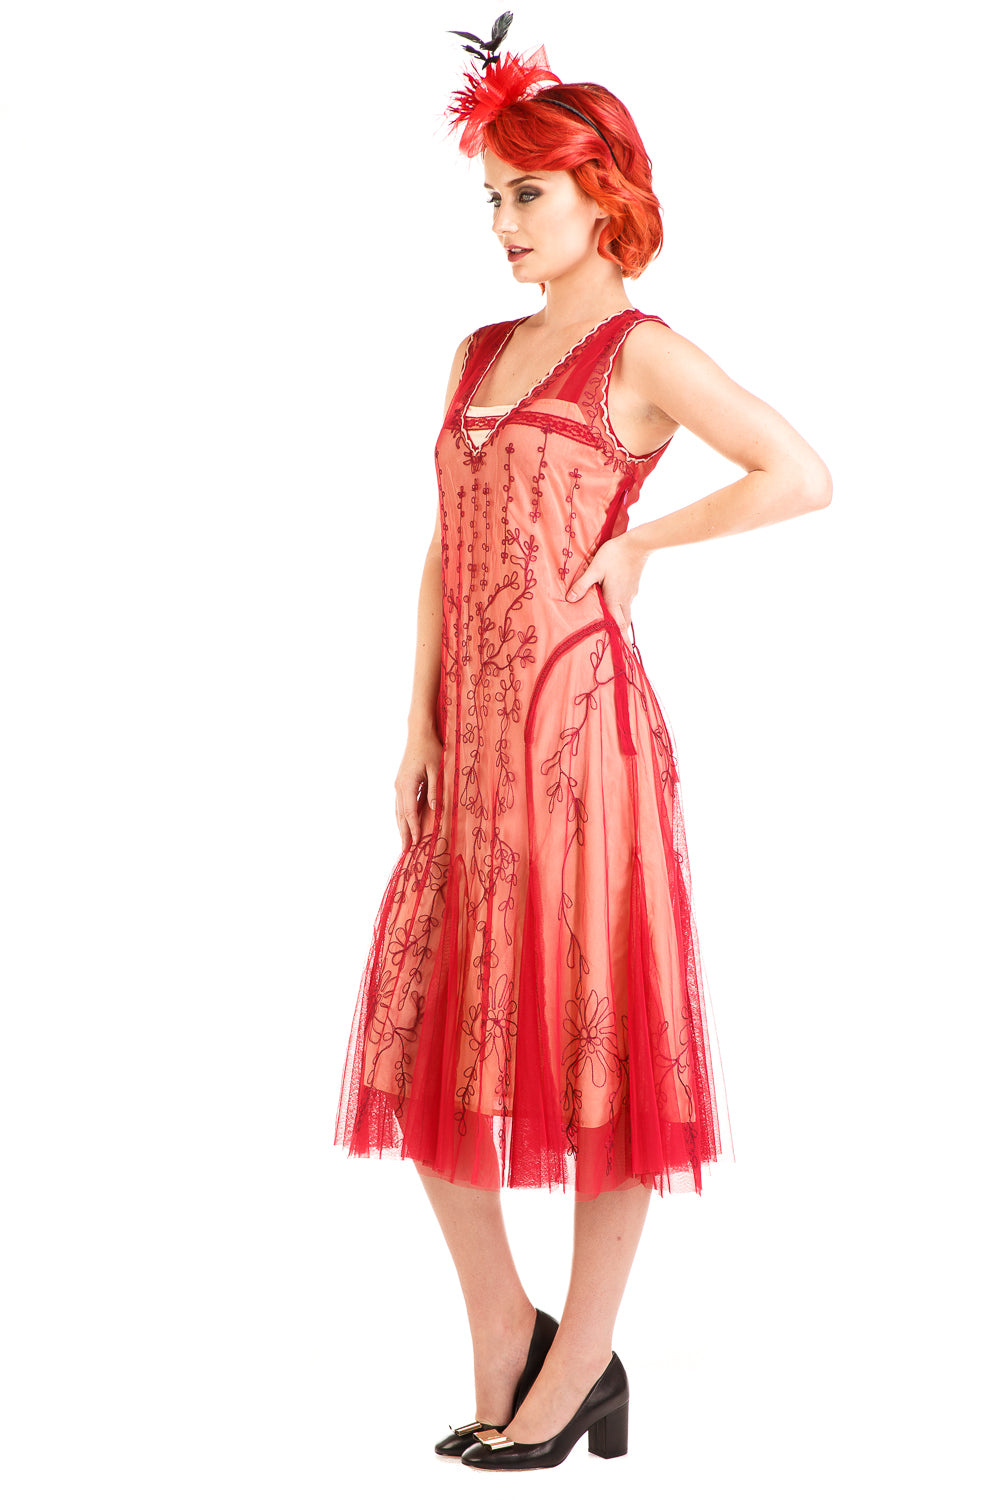 Nataya Jackie AL-281 Cherry Dress